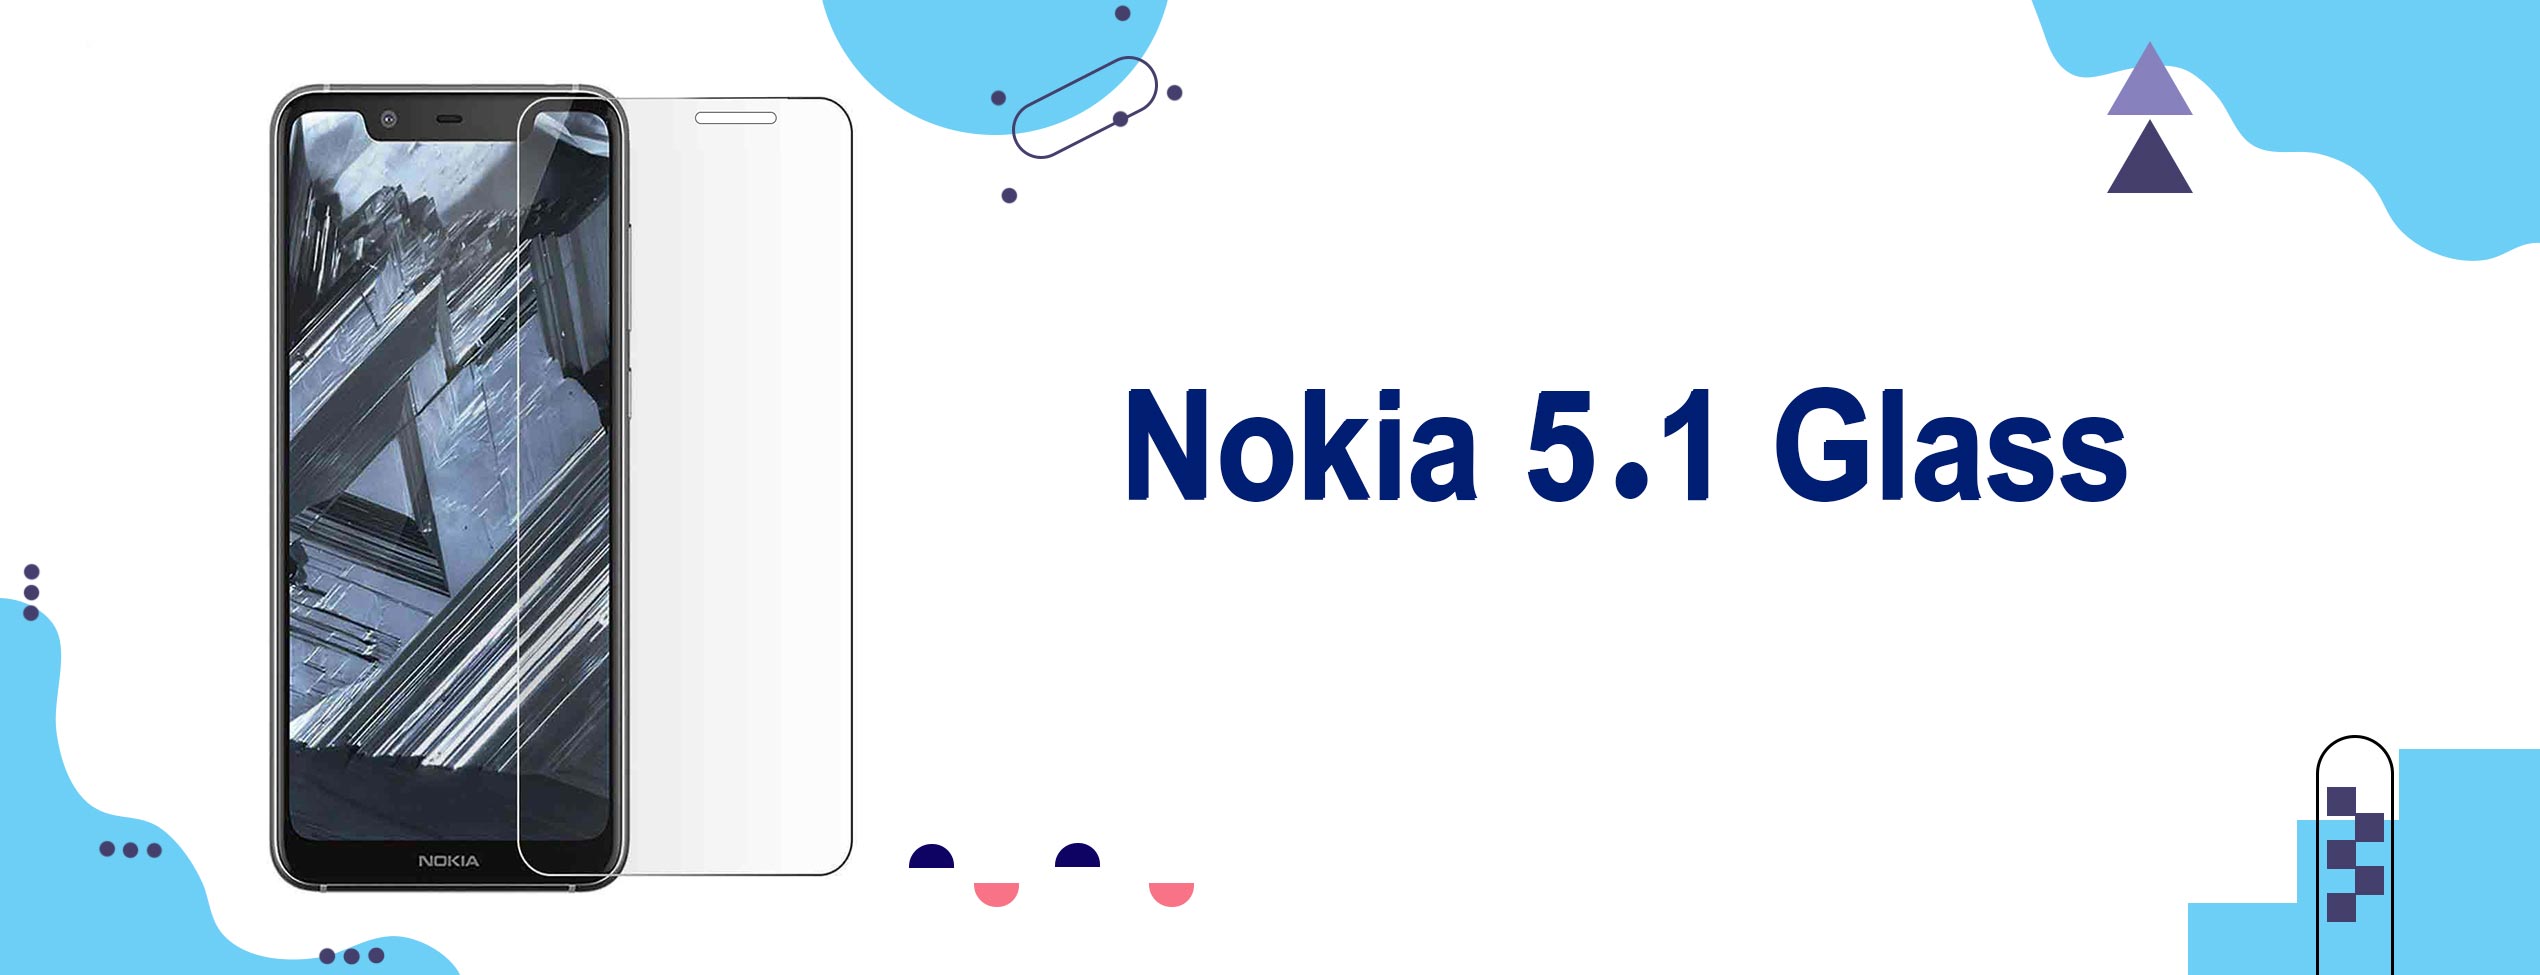 گلس محافظ صفحه گوشی نوکیا Nokia 5.1